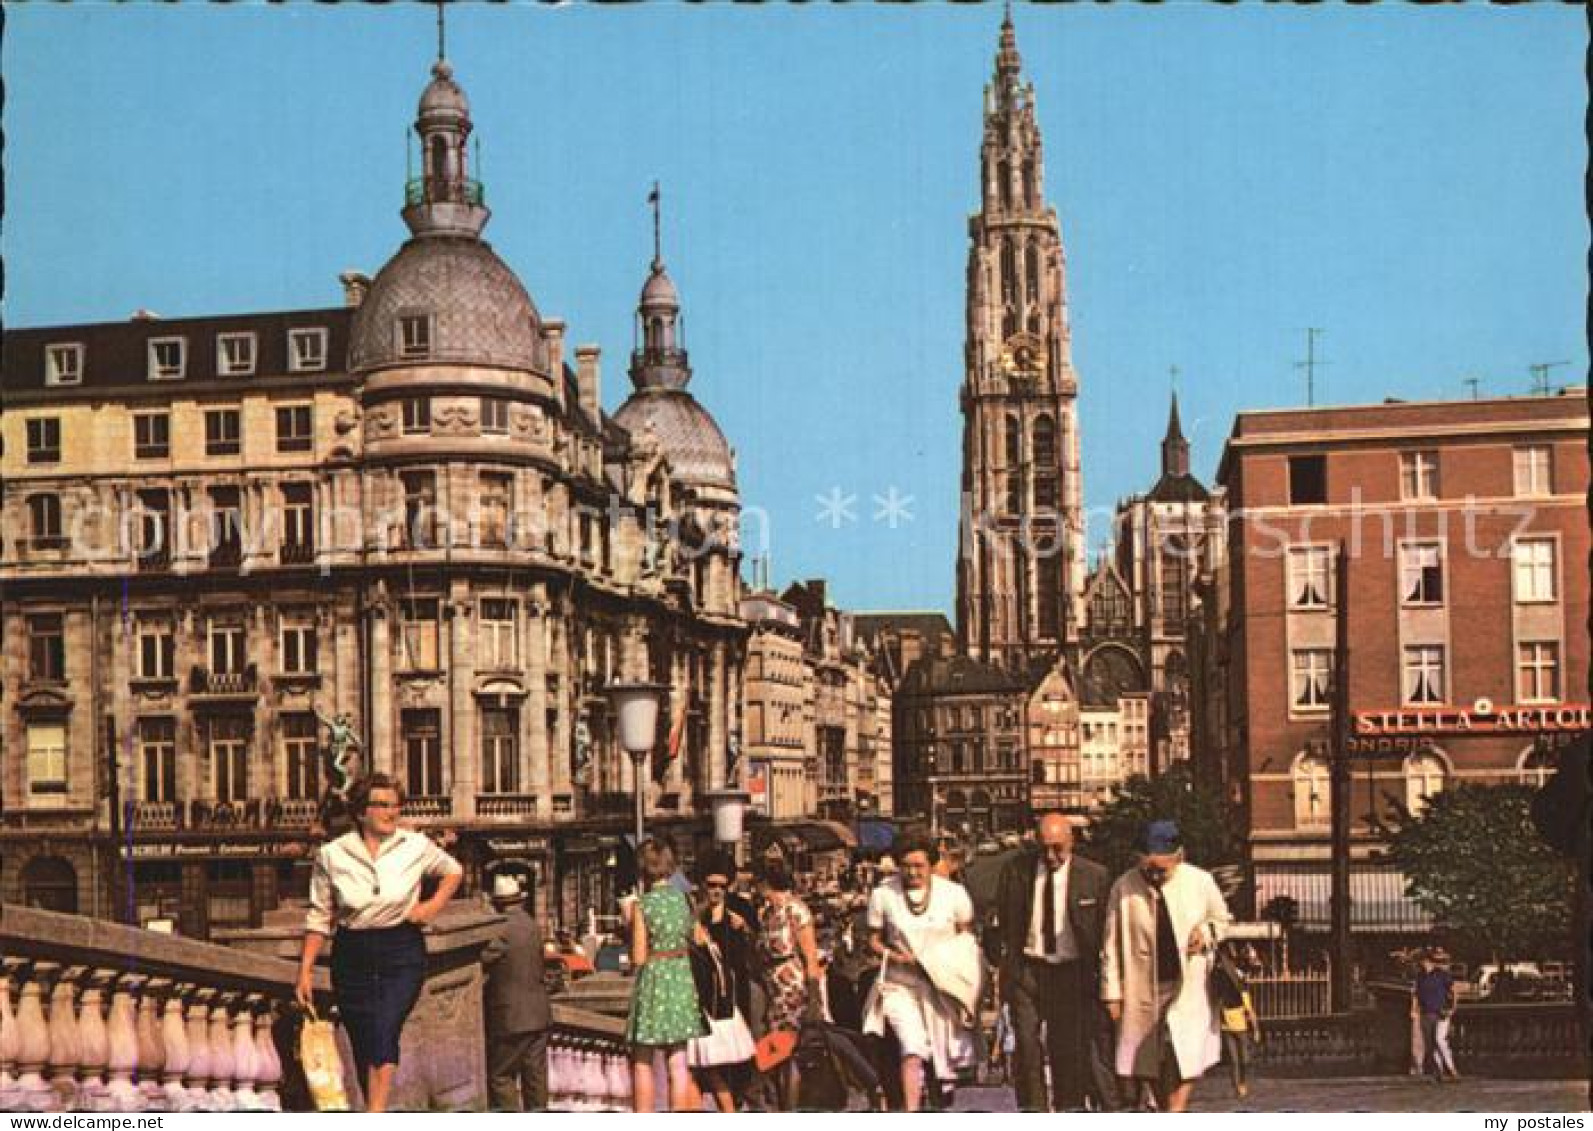 72578675 Antwerpen Anvers Canal Aud Sucre  - Antwerpen